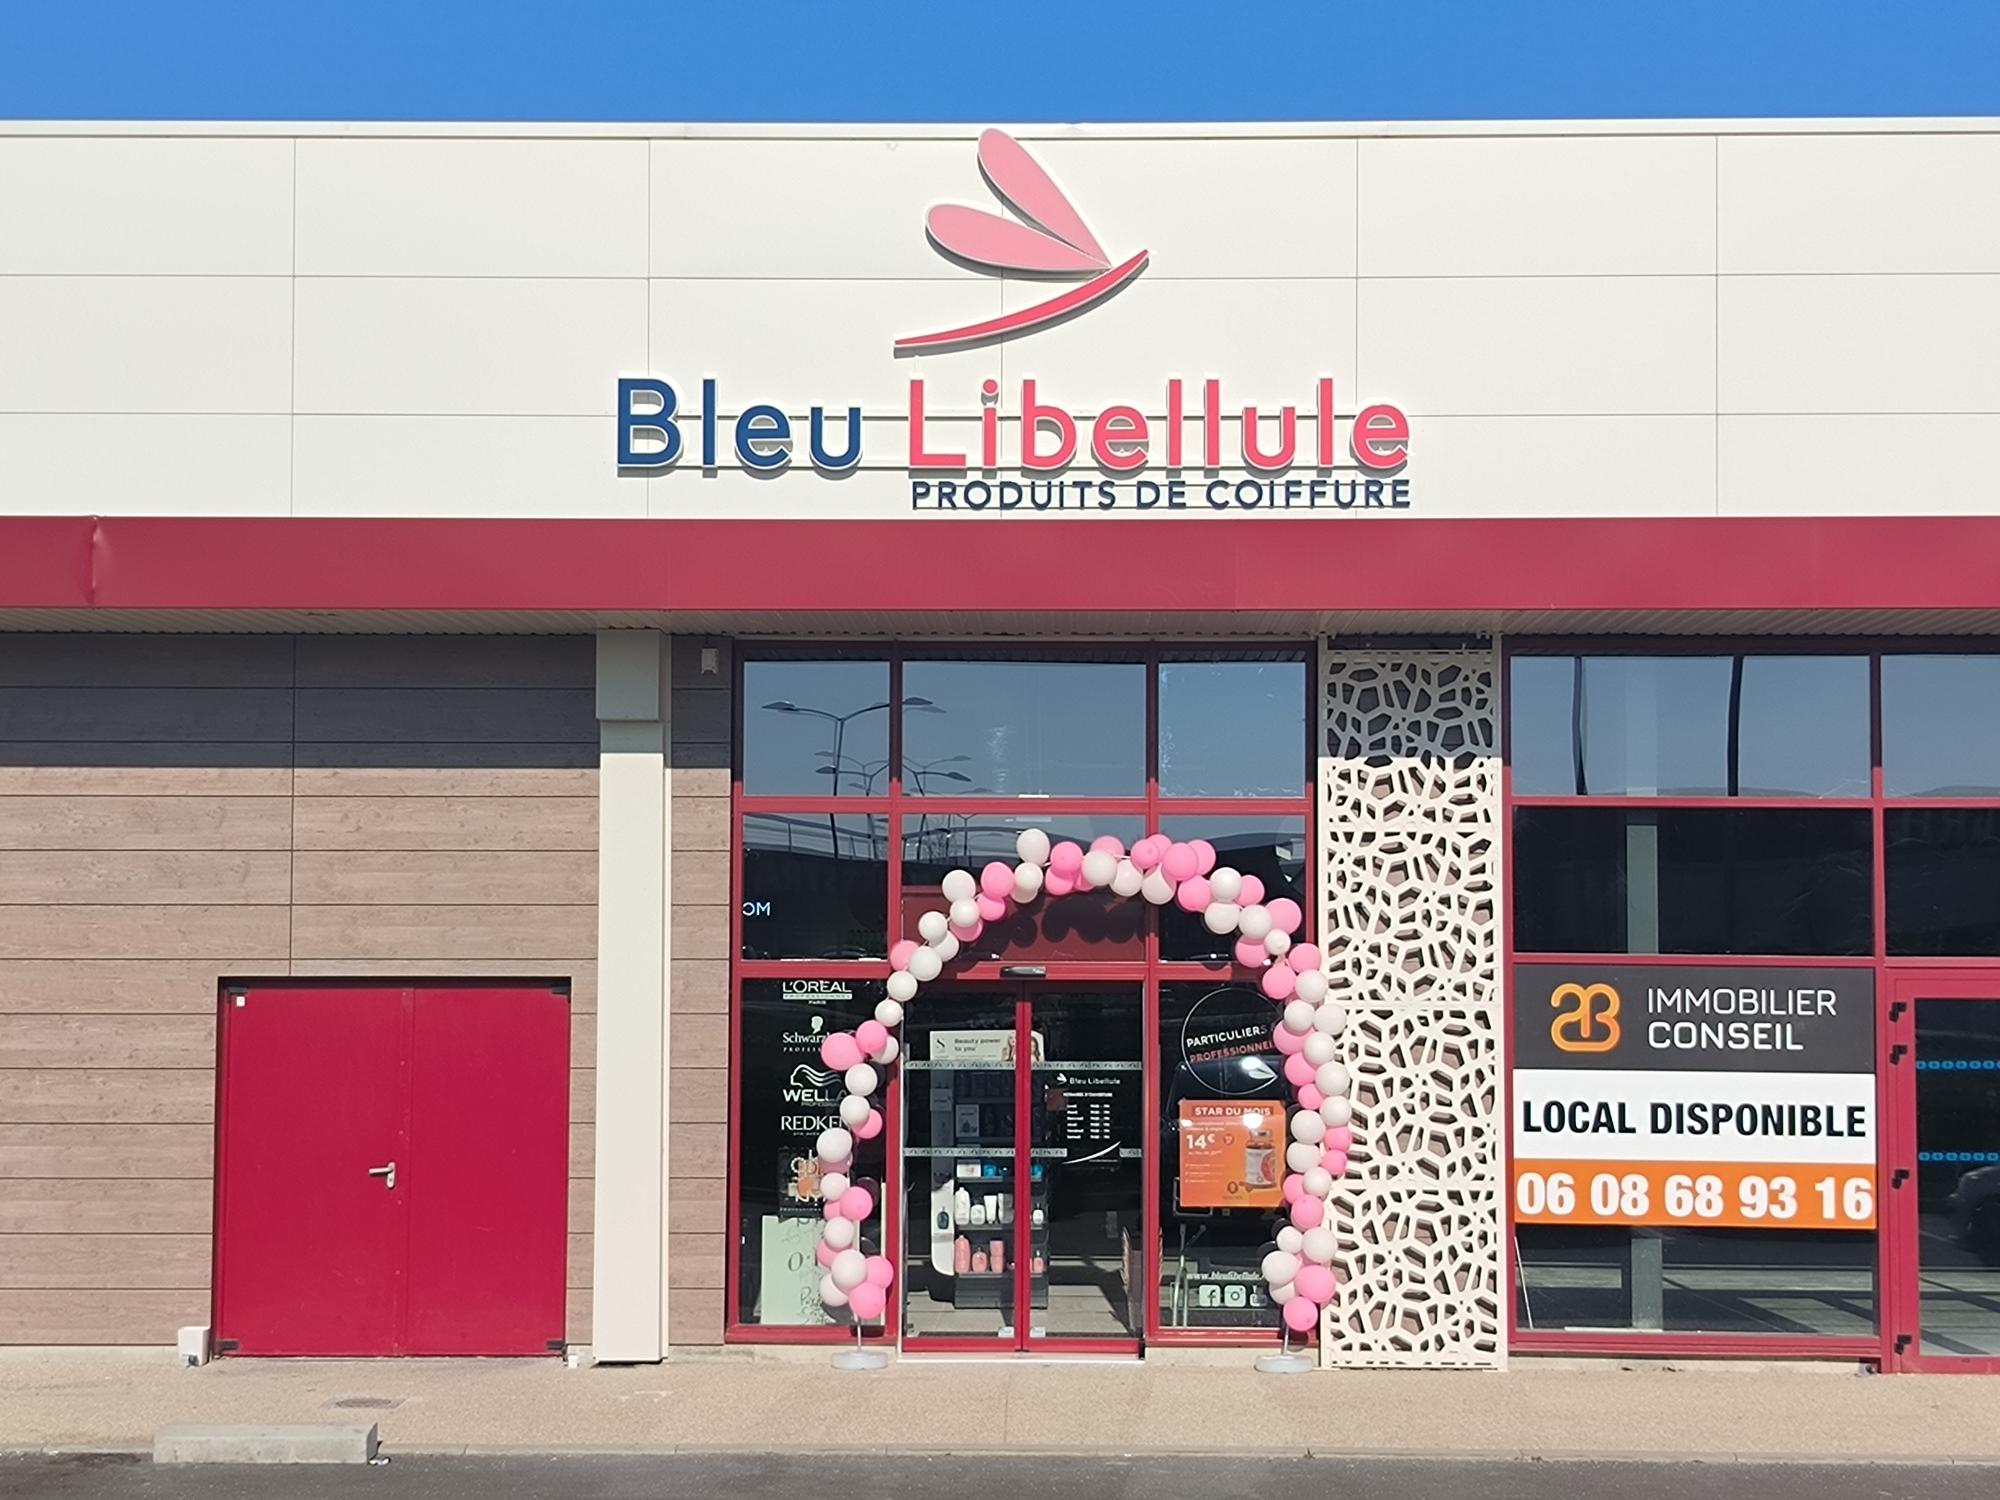 Boutique Bleu Libellule Bourges